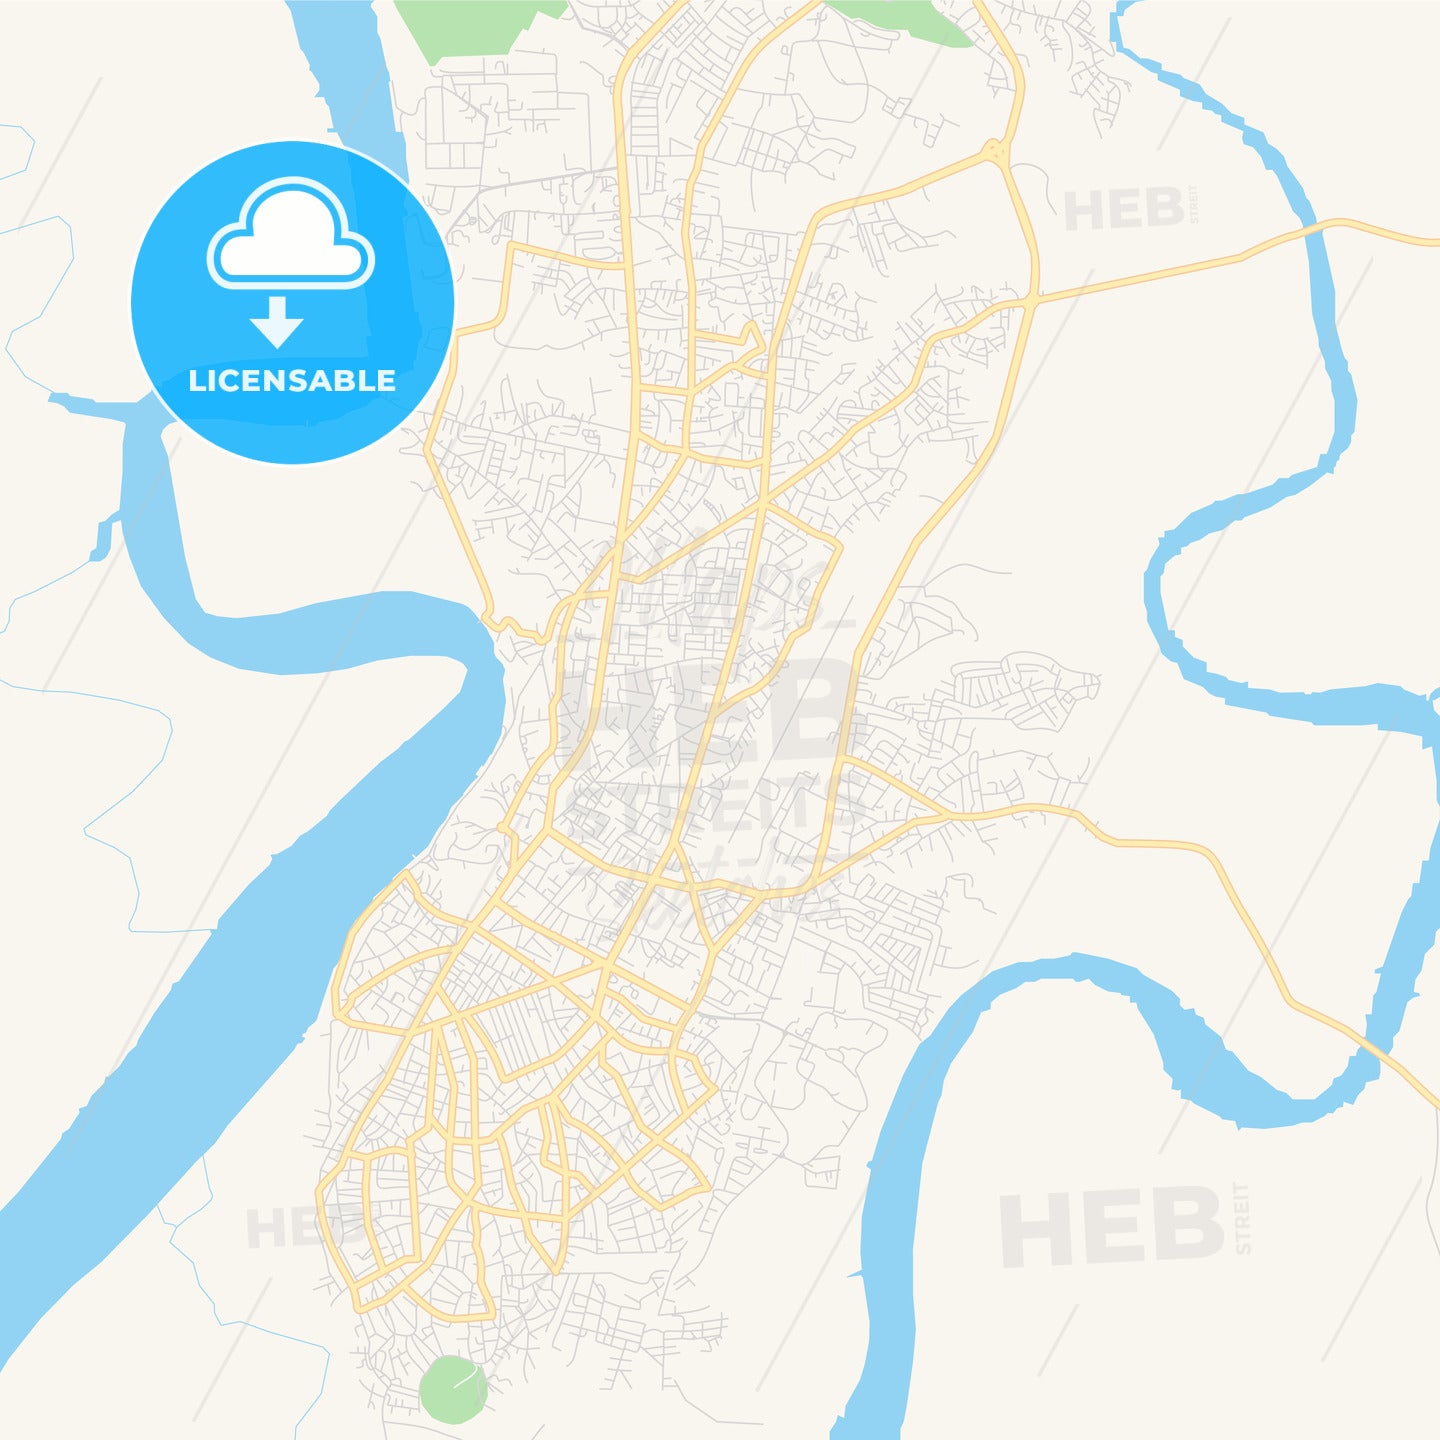 Printable street map of Calabar, Nigeria